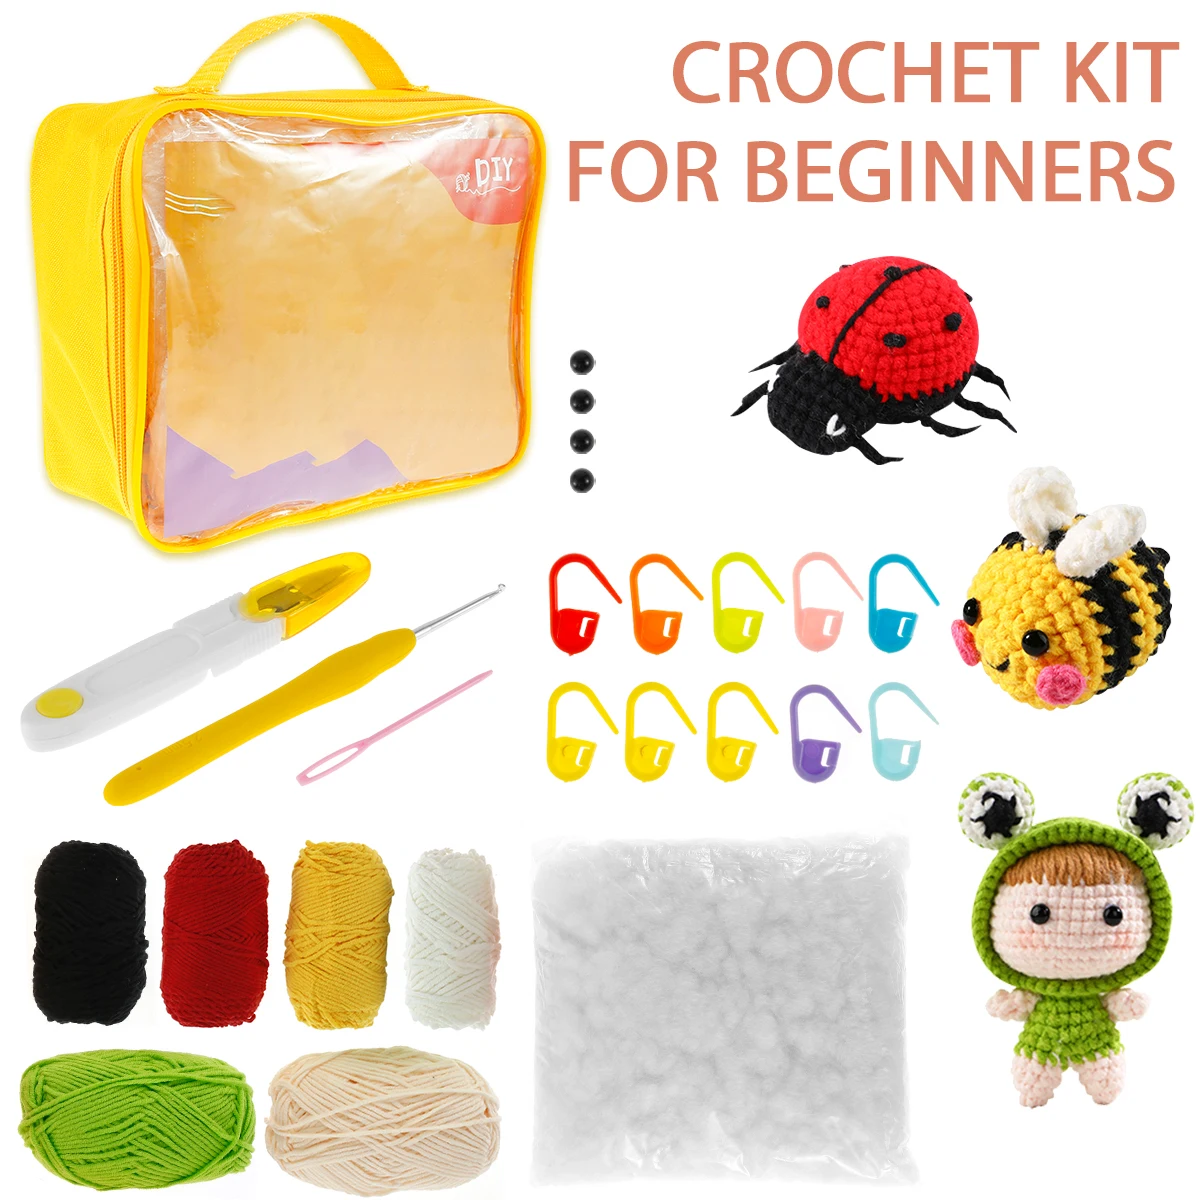 

3Pcs Crochet Kit for Beginners Complete Crochet Knitting Adorable Doll Bee Ladybug Crochet Starter Pack DIY Crochet Craft Kit